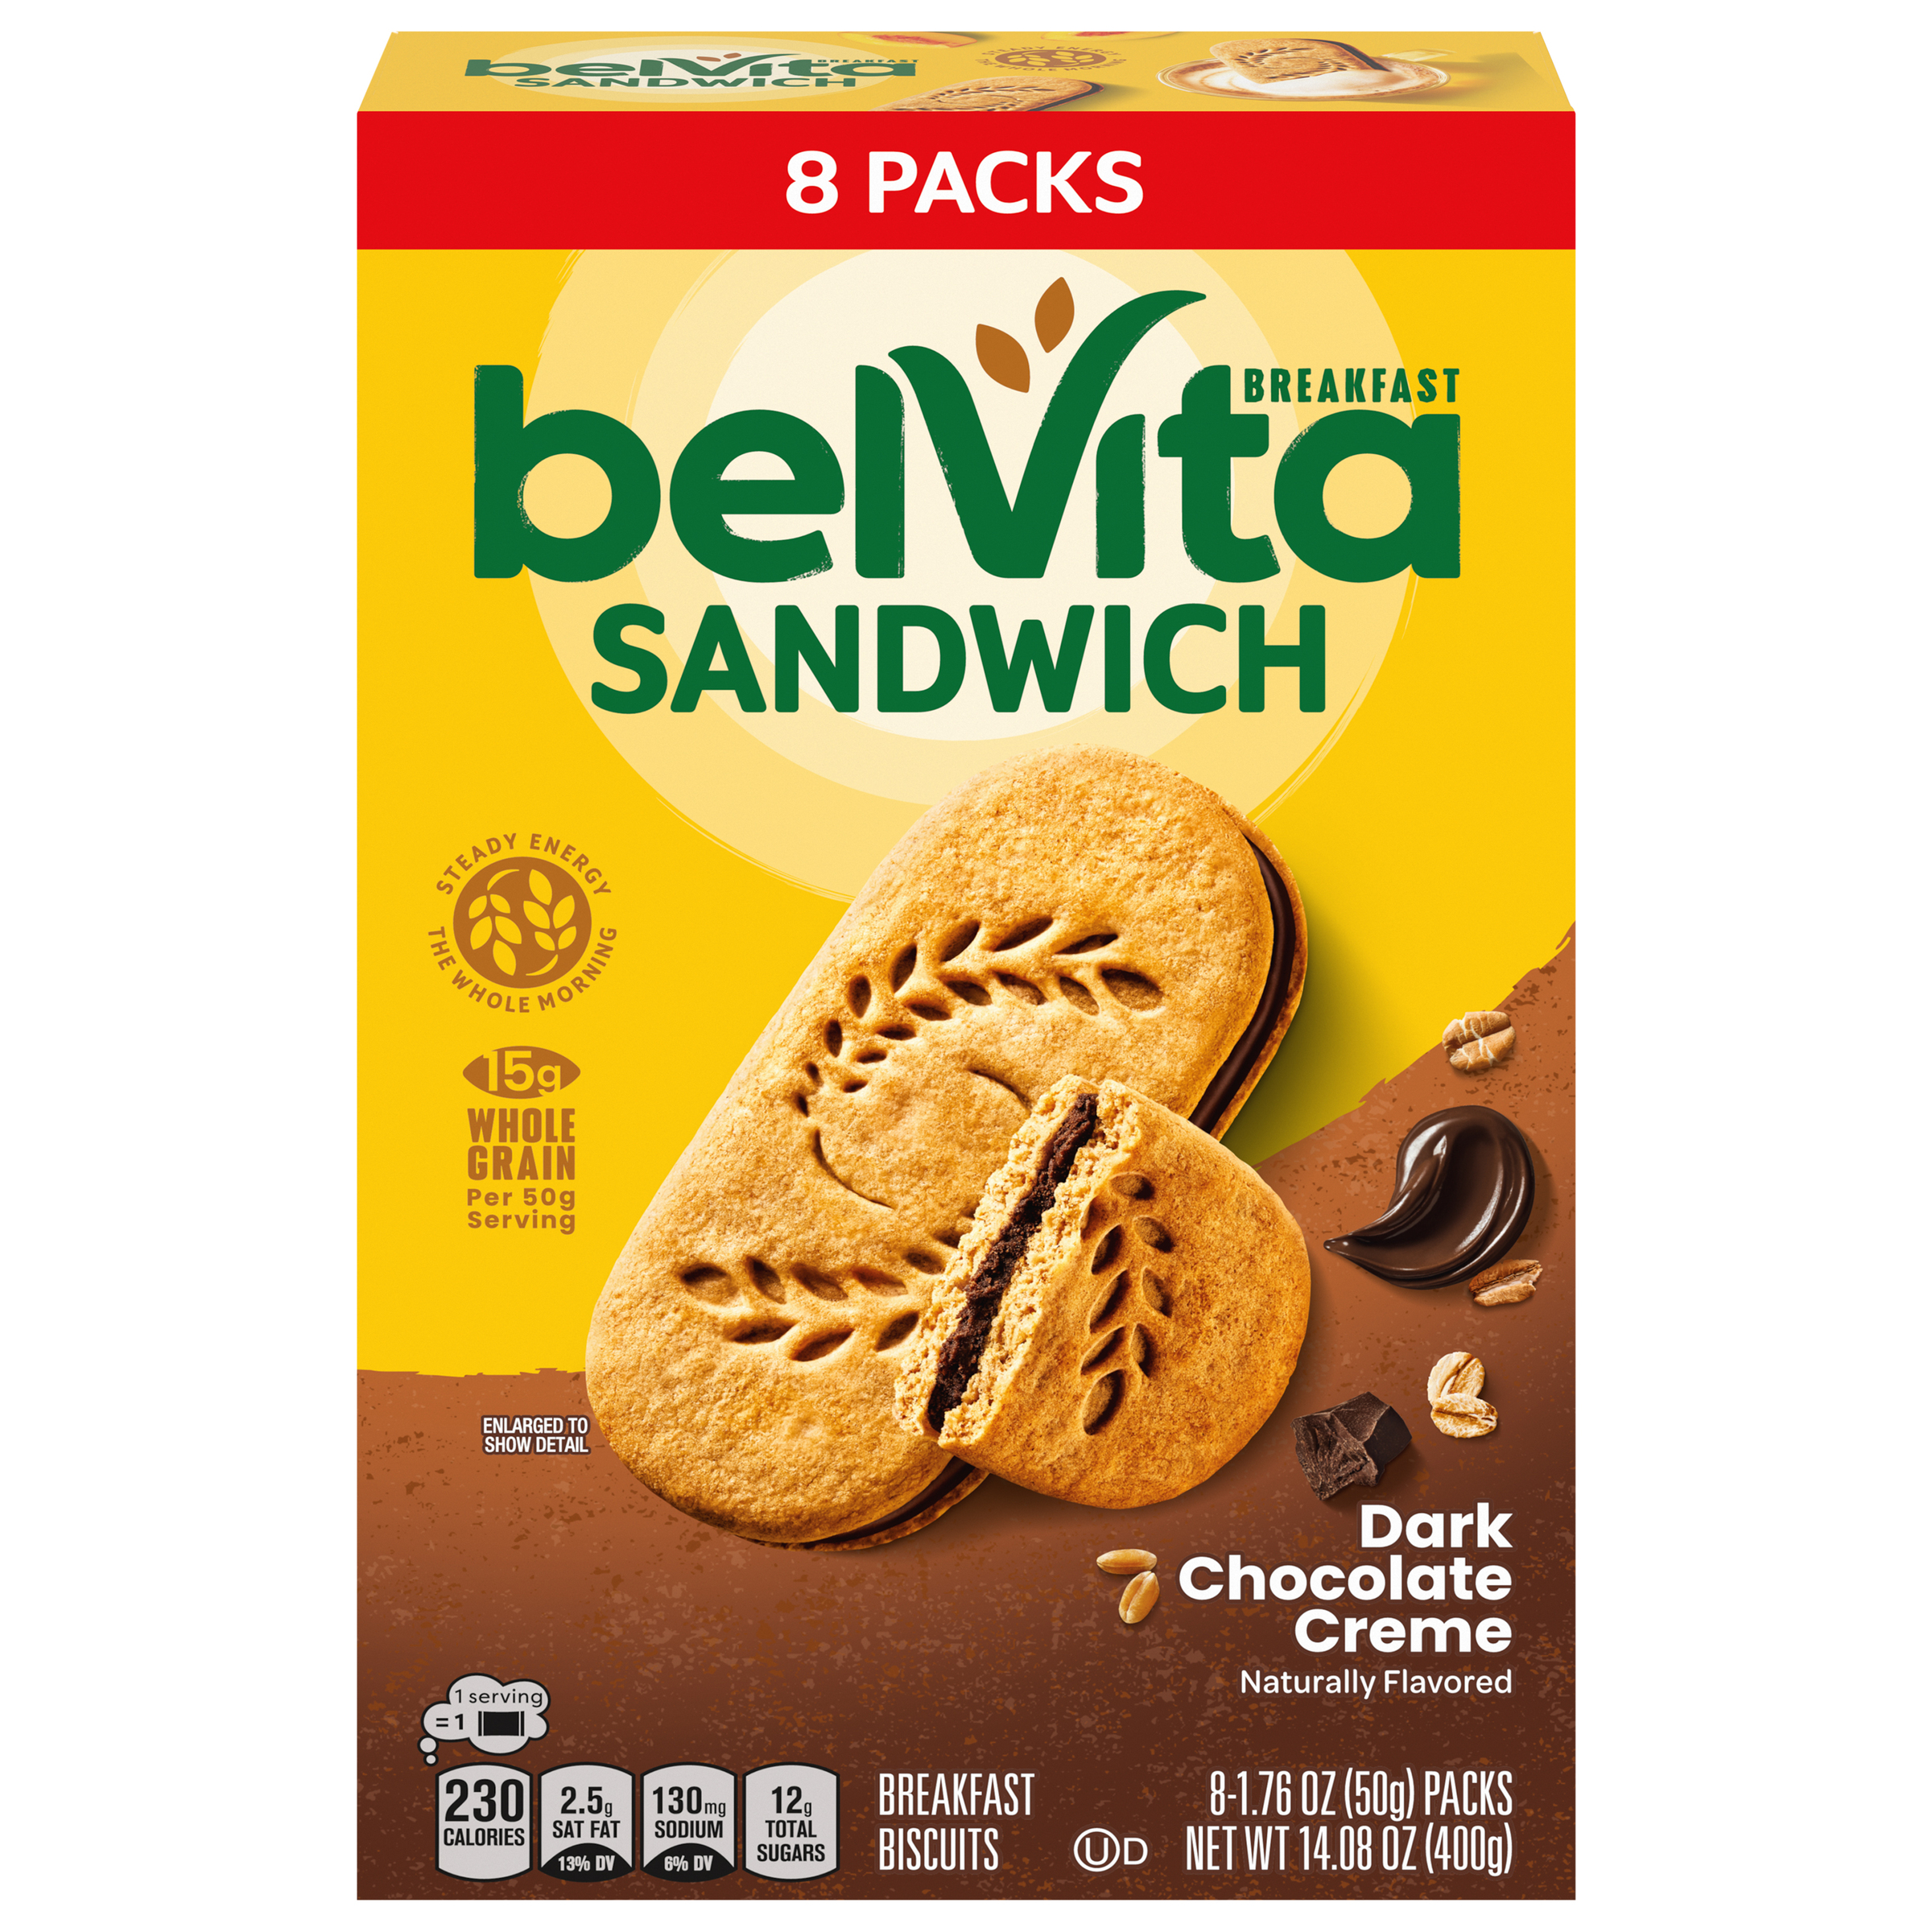 BELVITA Sandwich Breakfast Sandwich Dark Chocolate Creme Breakfast Biscuits 14.08 OZ